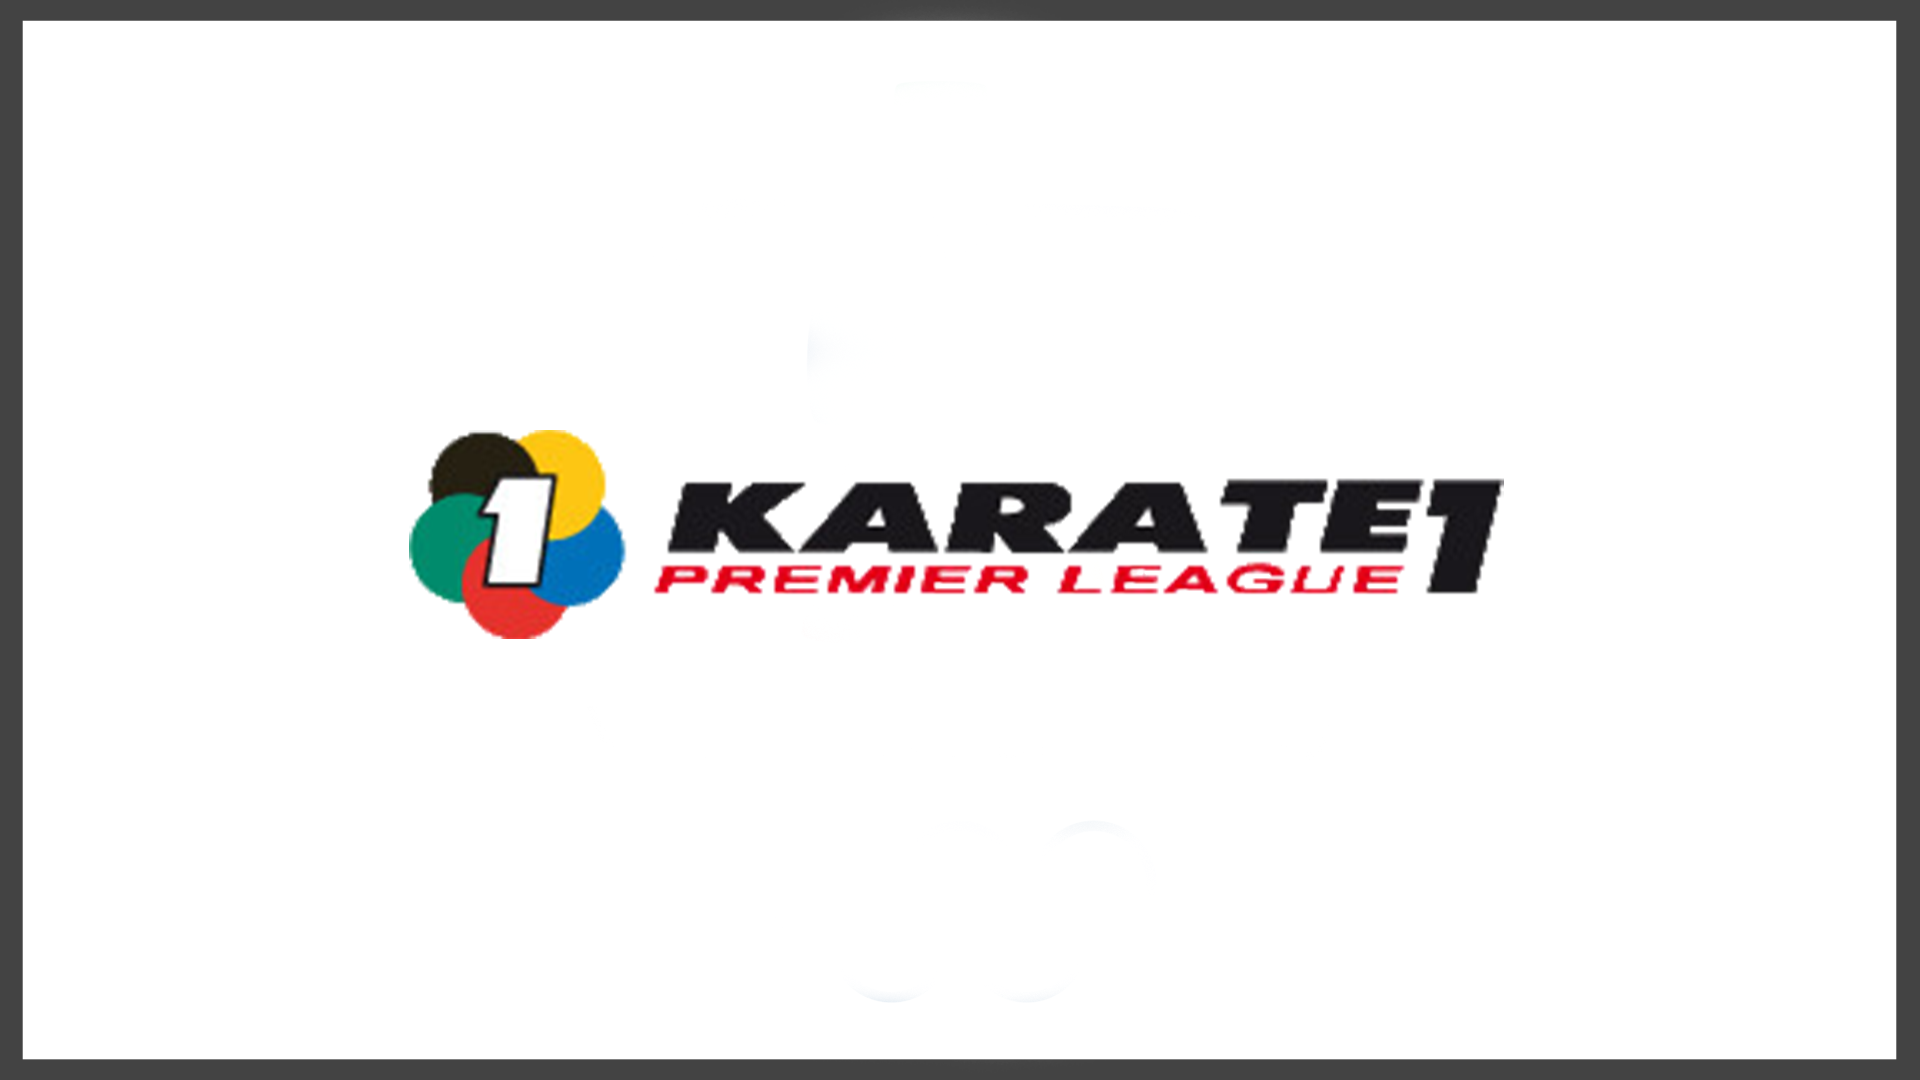 Karate Premier League Argus Productions